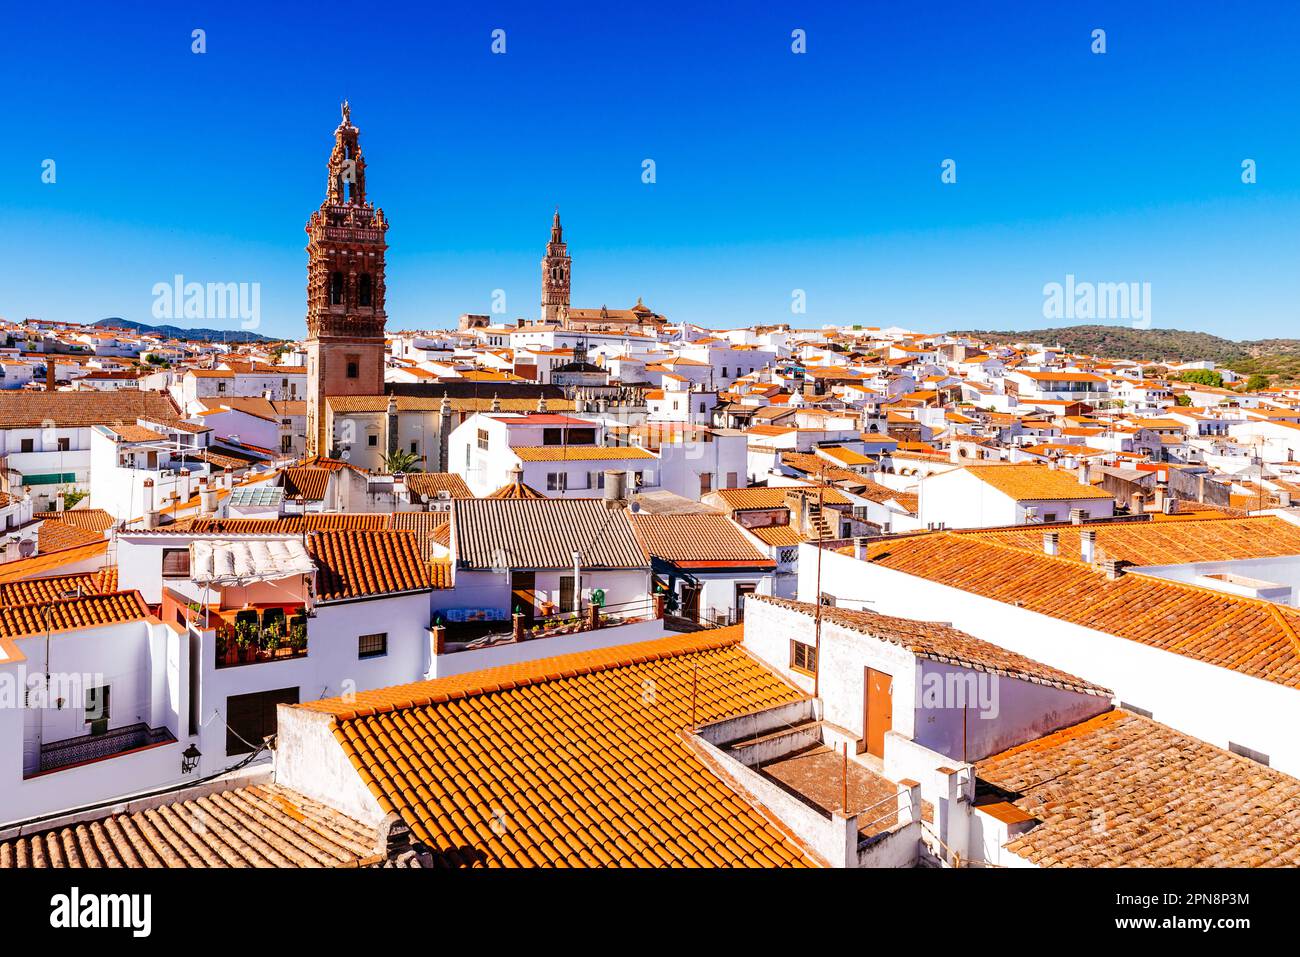 Vue aérienne de la ville de Jerez de los Caballeros mettant en évidence les clochers de l'église de San Miguel (L) et de l'église de San Bartolome (R). J Banque D'Images